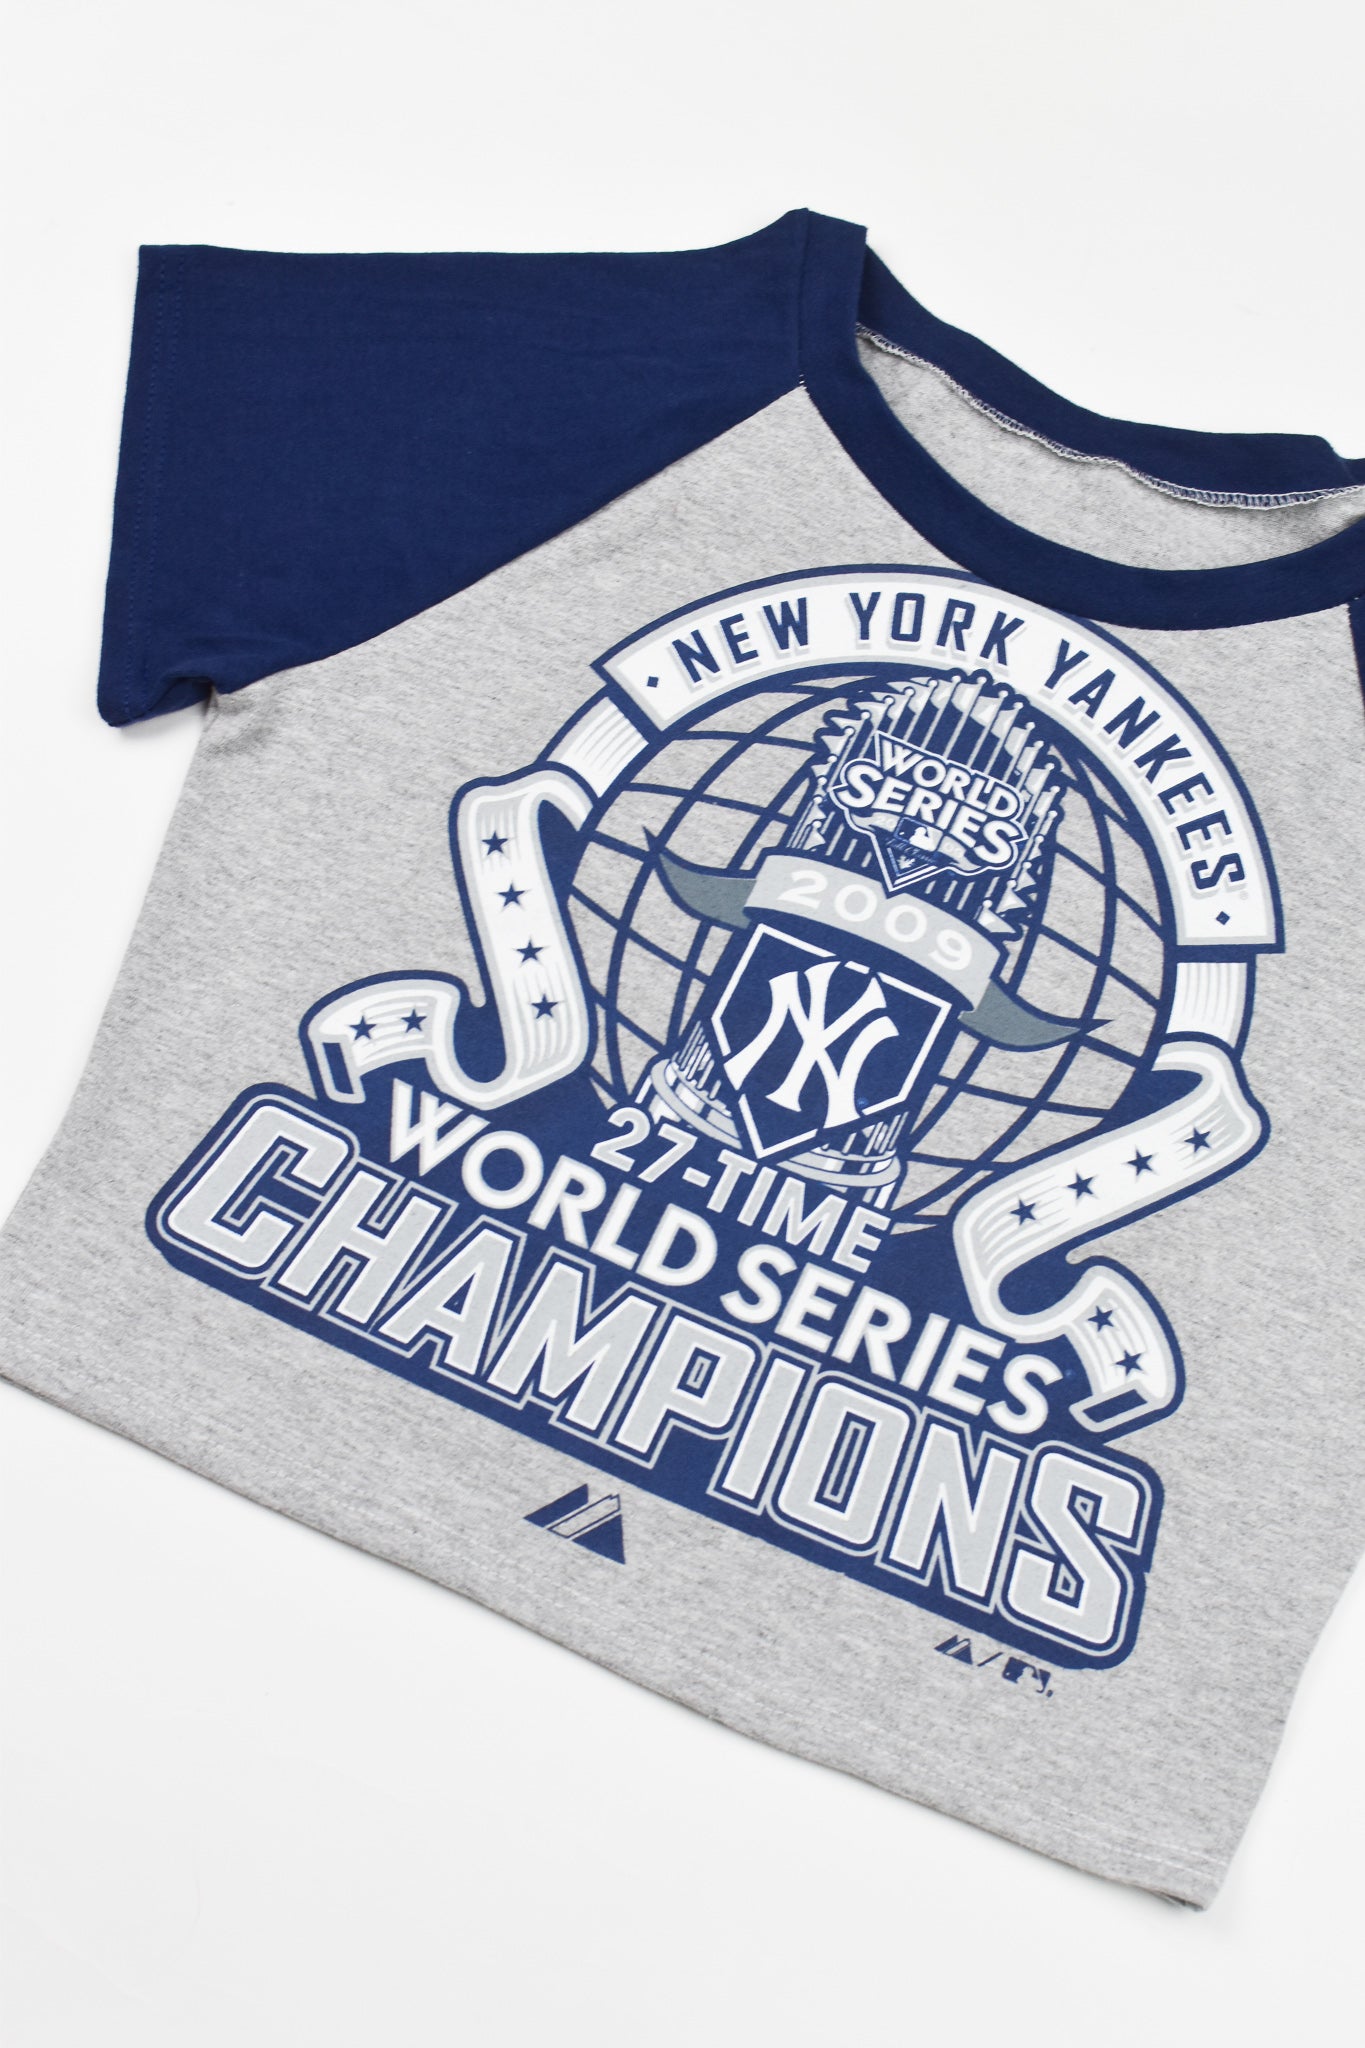 1990 New York Yankees Baby Tee